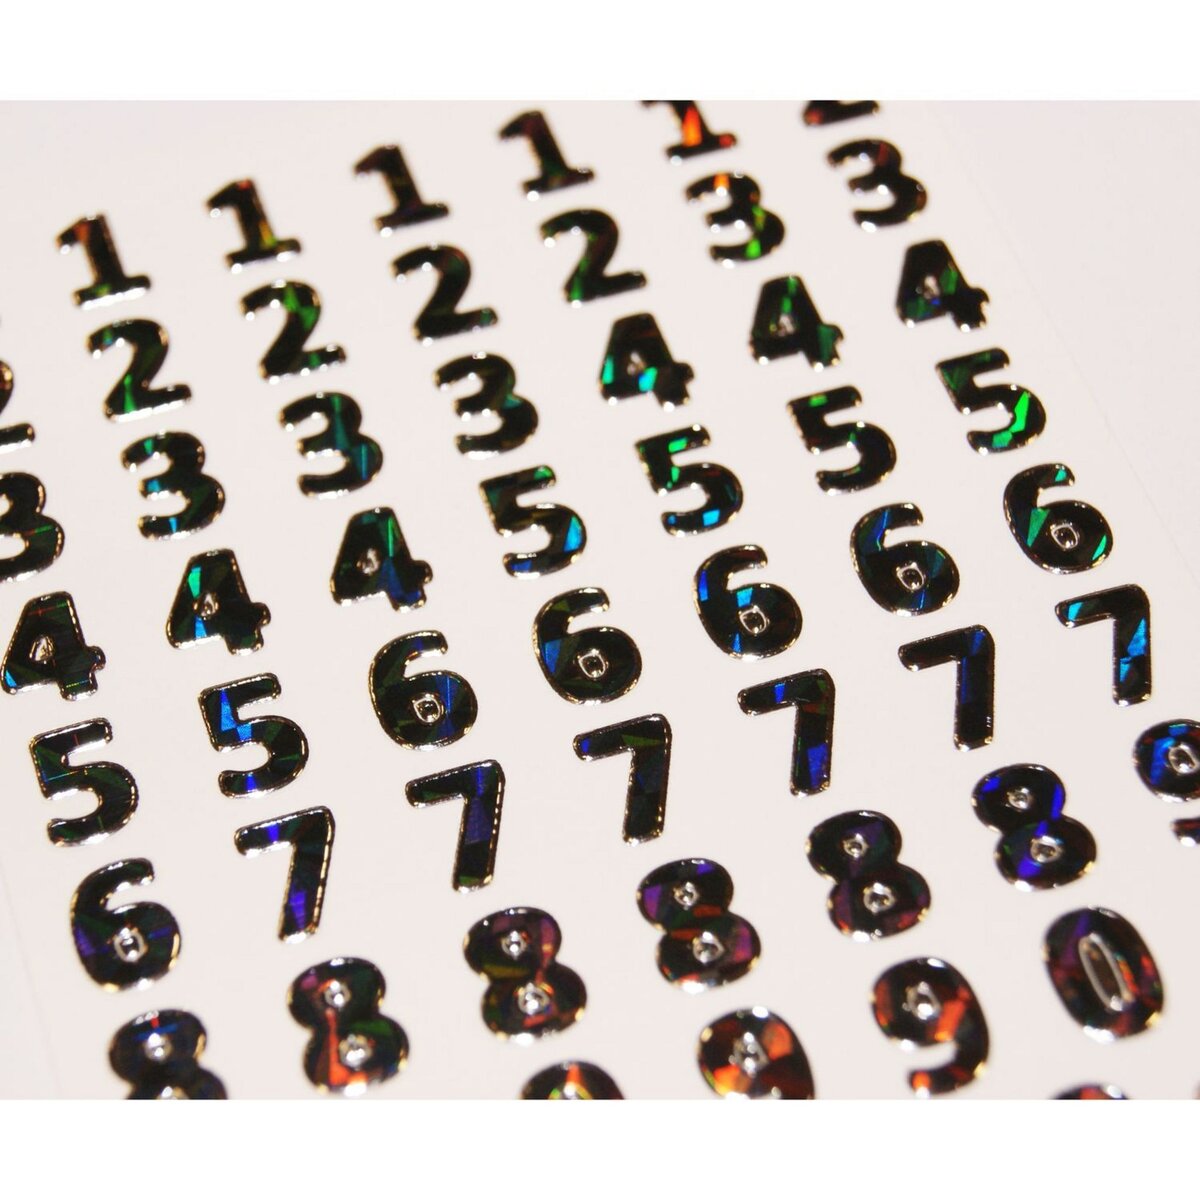  64 Stickers Chiffres Argent - 0,8 cm